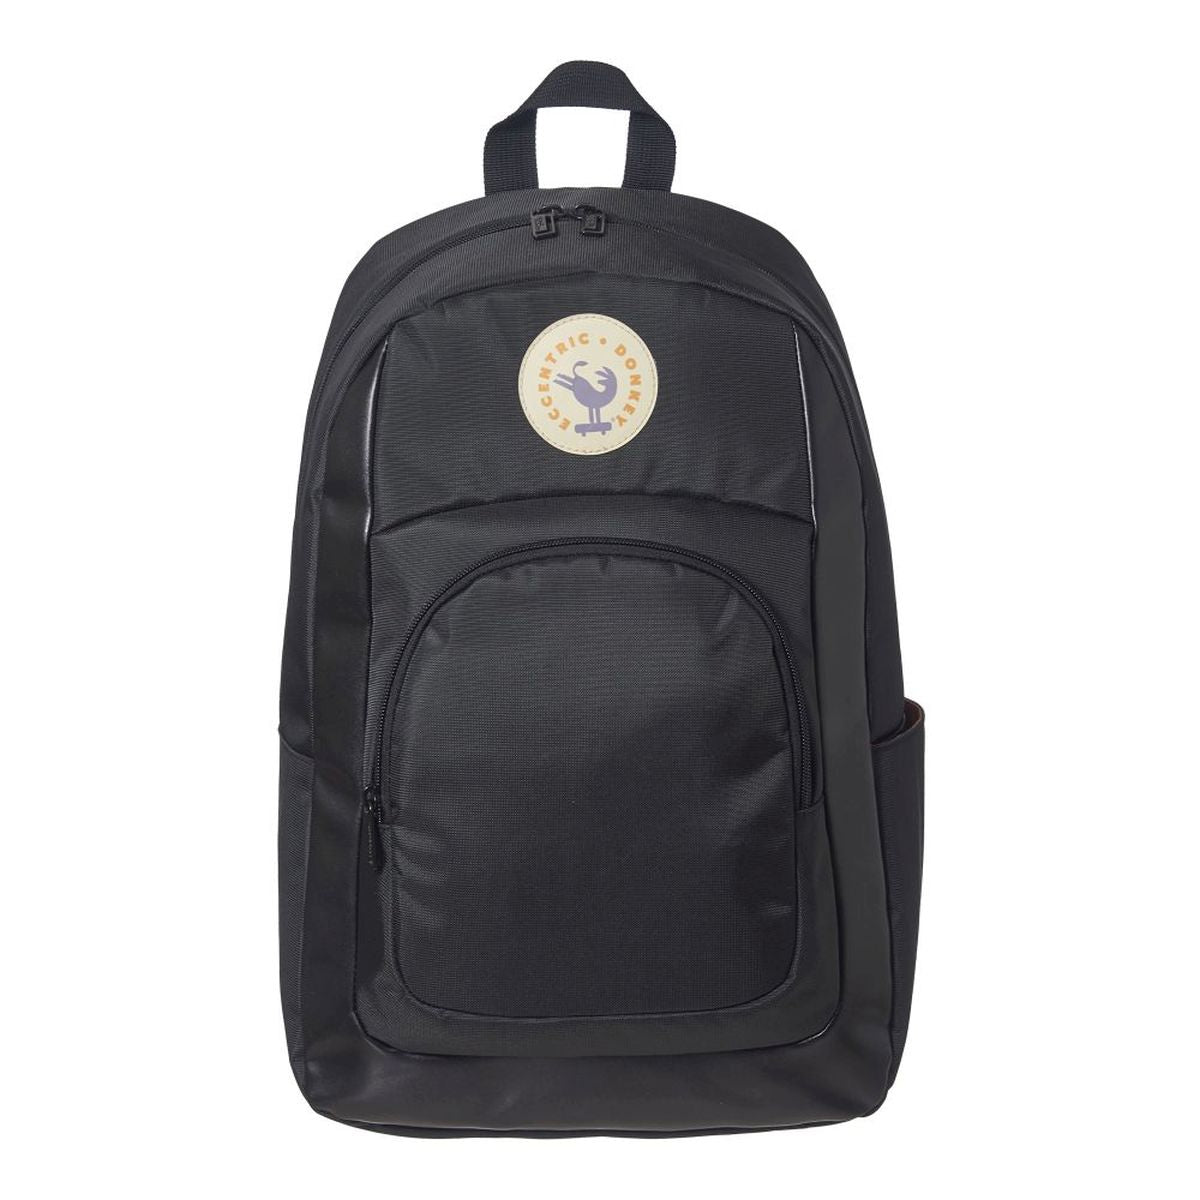 Backpack Poitou Basic Black